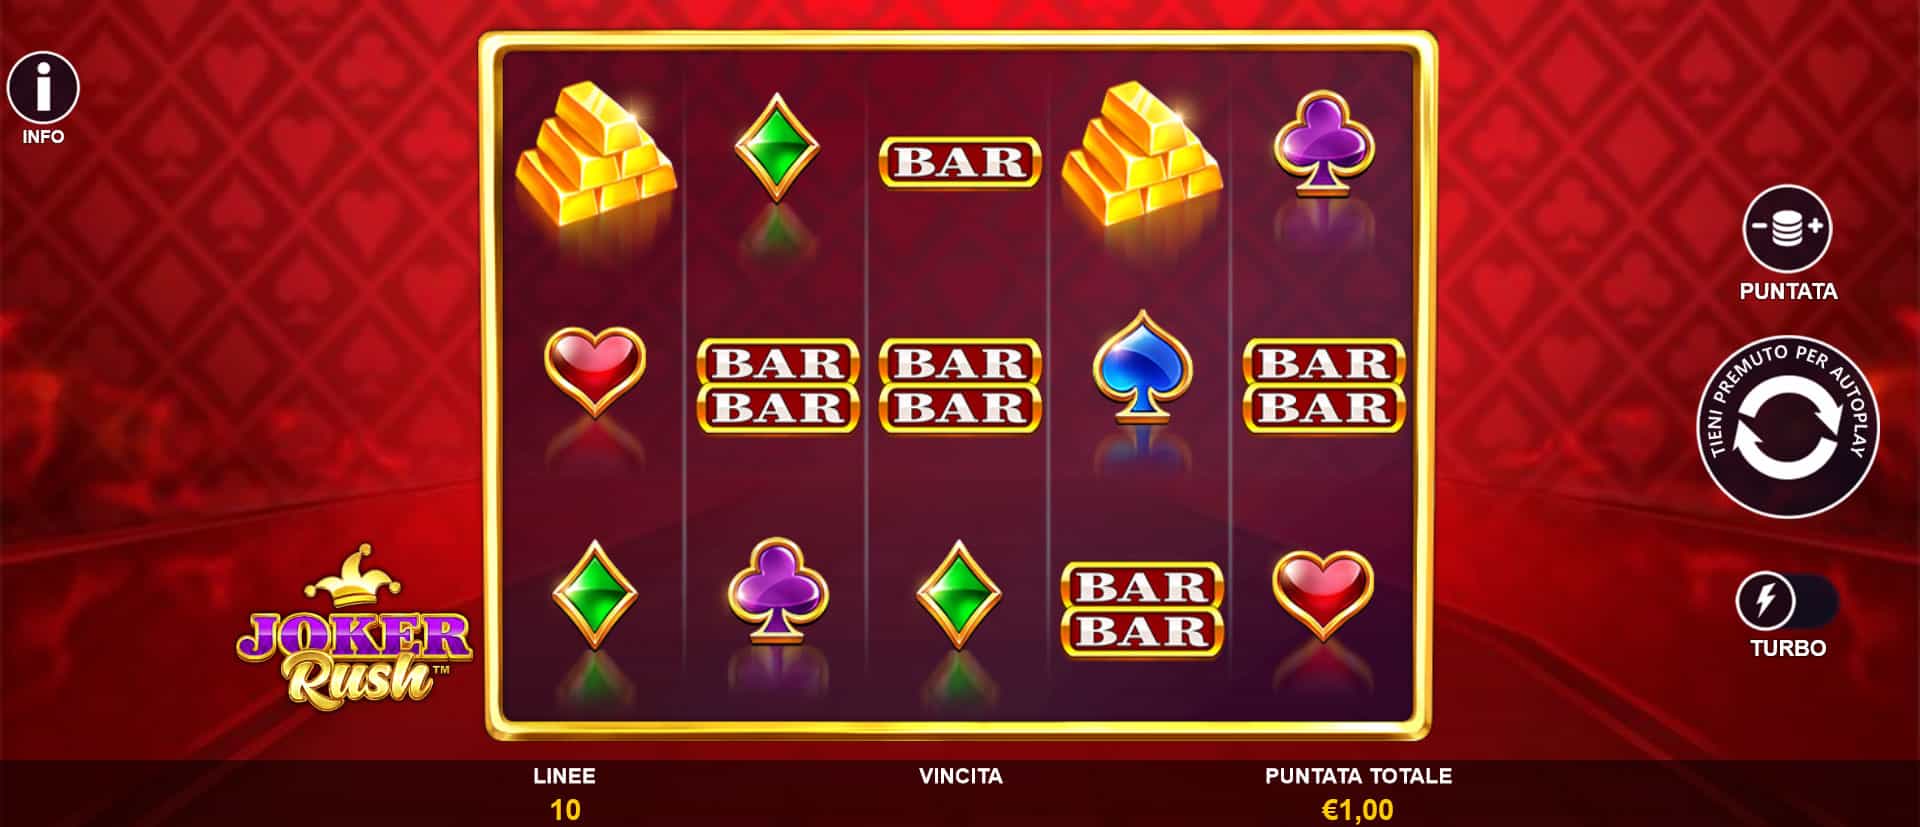 schermata di gioco della slot online joker rush